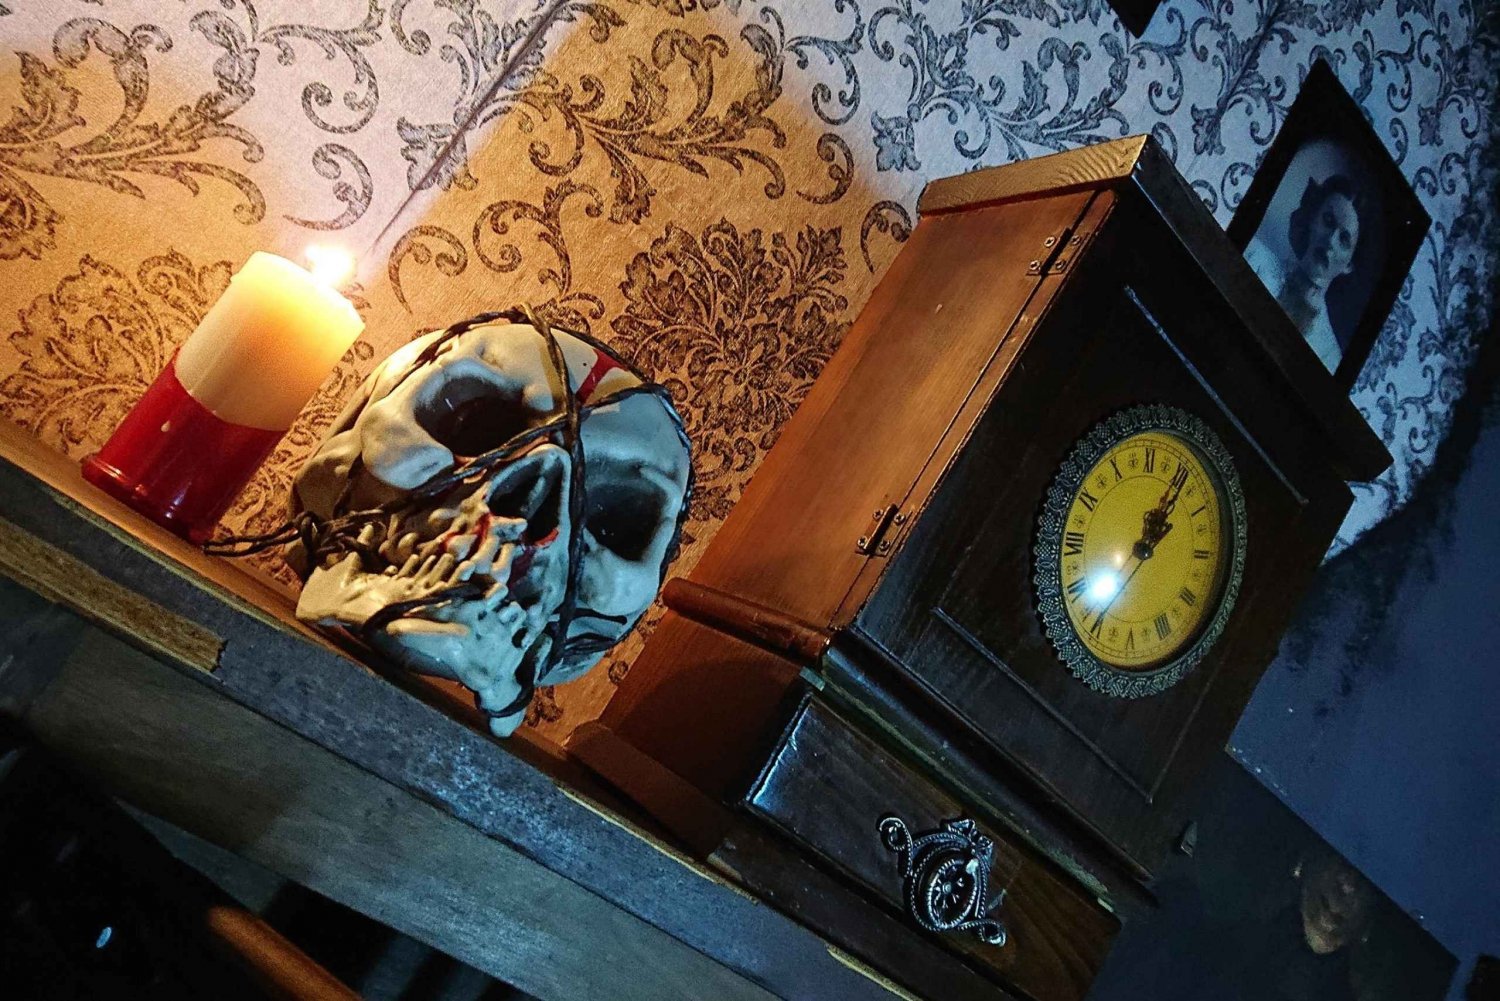 Madrid : Escape Room effrayante 'The Haunted Box' (La boîte hantée)